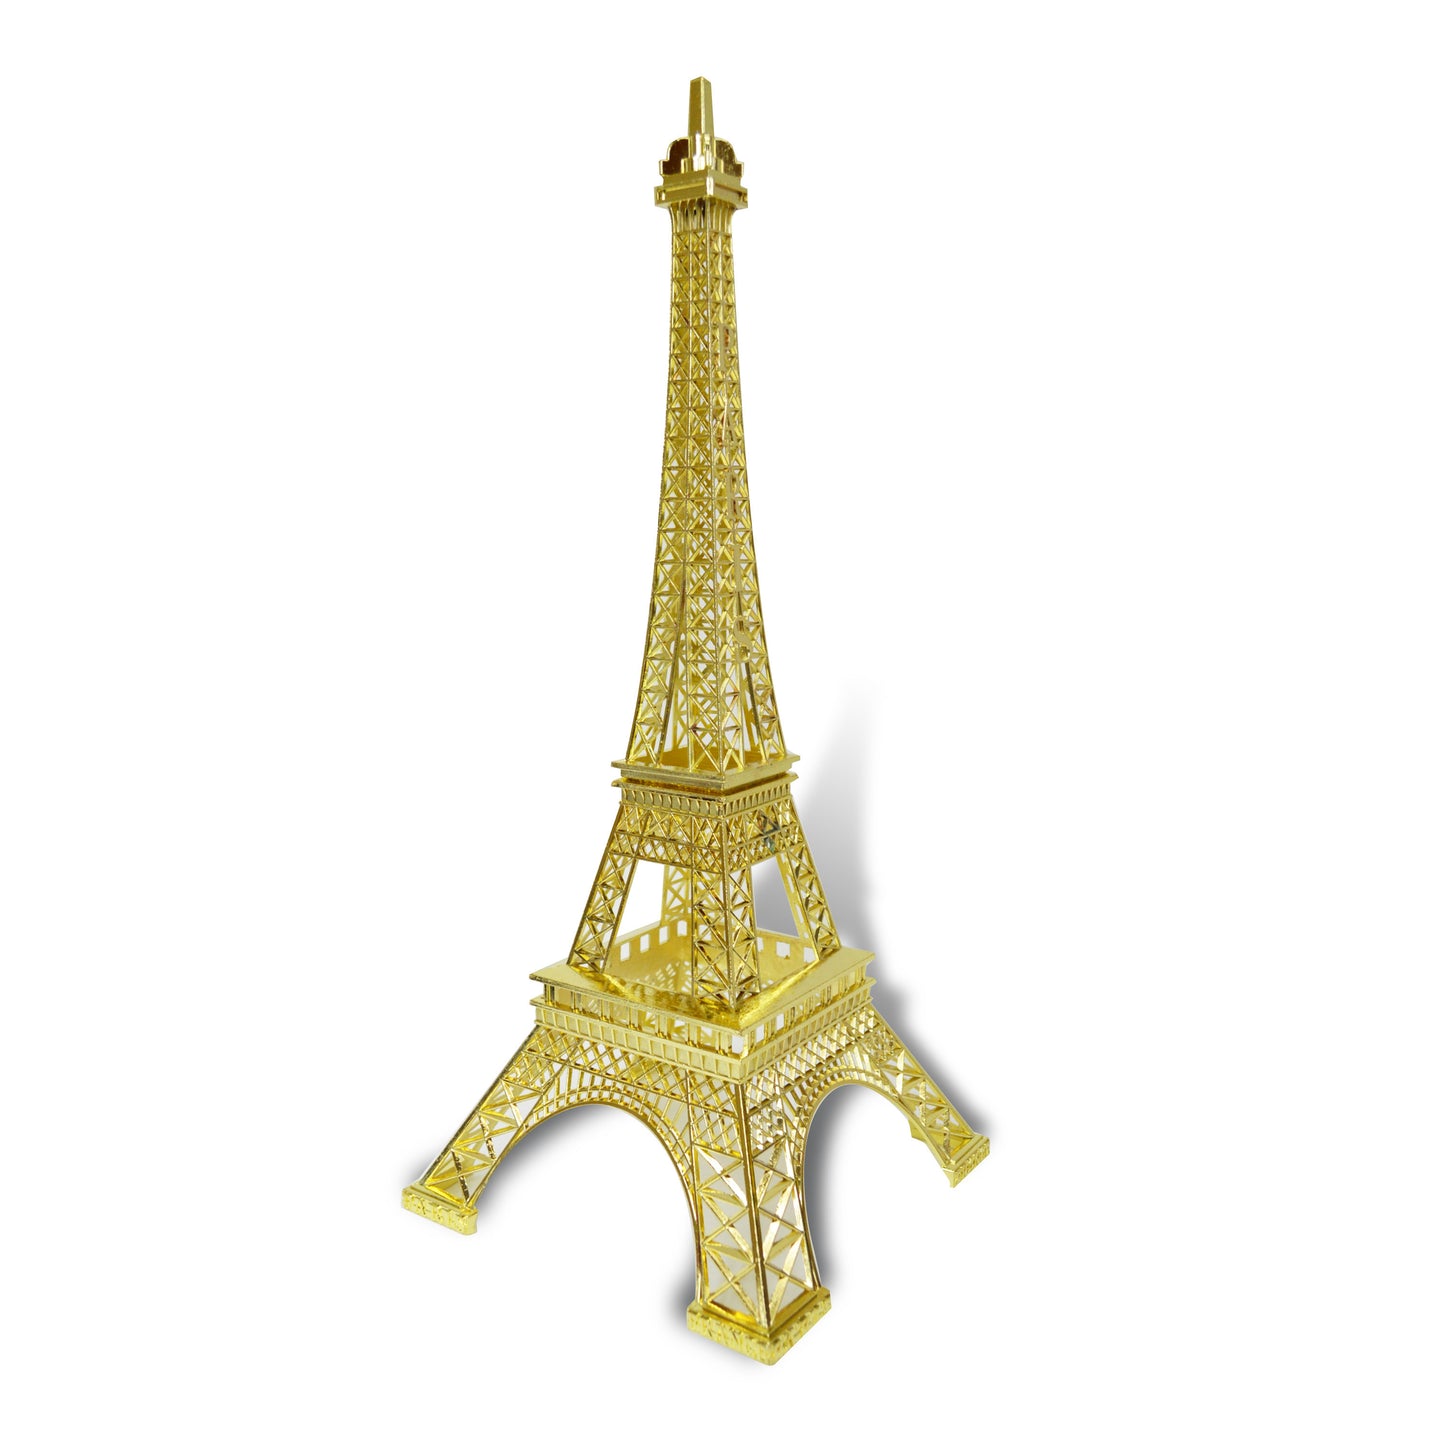 Allgala Eiffel Tower Statue 15 inch (38cm) Decor Alloy Metal